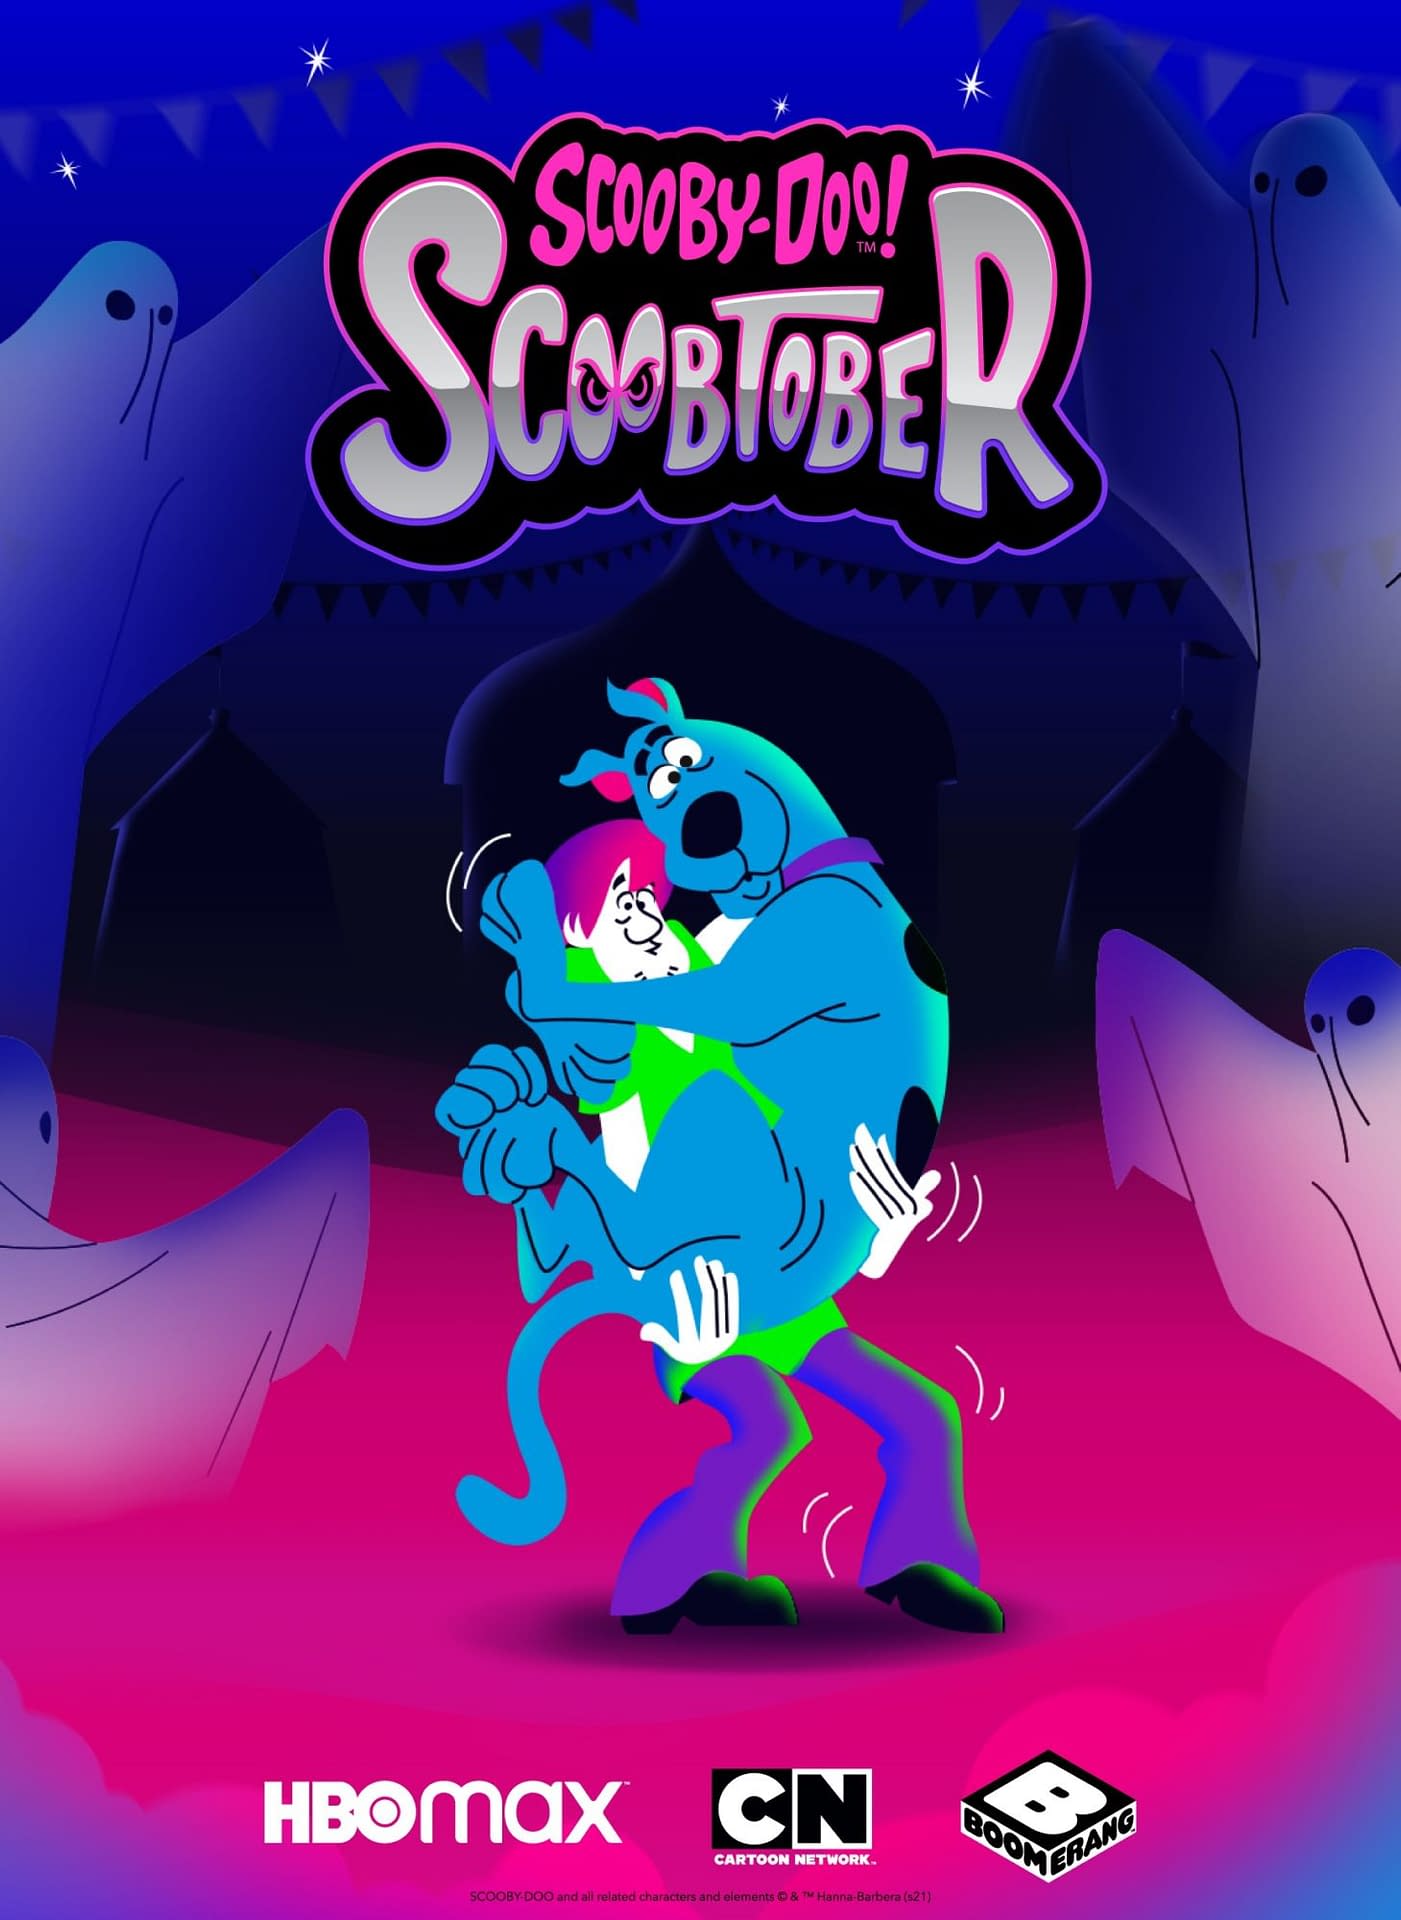 Scoobtober: HBO Max, Cartoon Network's Scooby-Doo Halloween Line-Up